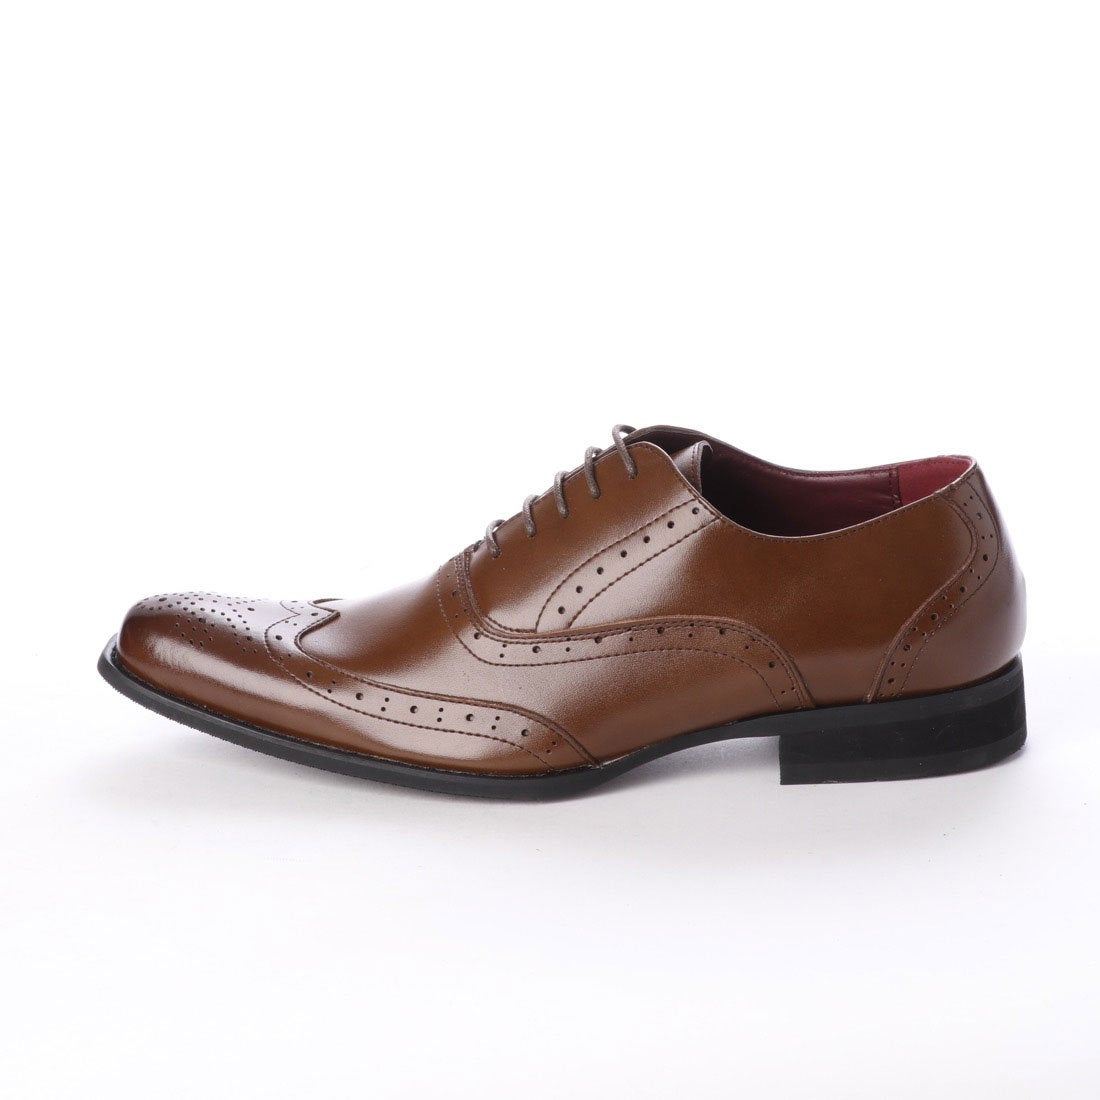 最大62%OFFクーポン ジーノ ビジネスシューズ メンズ 革靴 紳士靴 カジュアル シューズ 靴 ze5013 limoroot.com